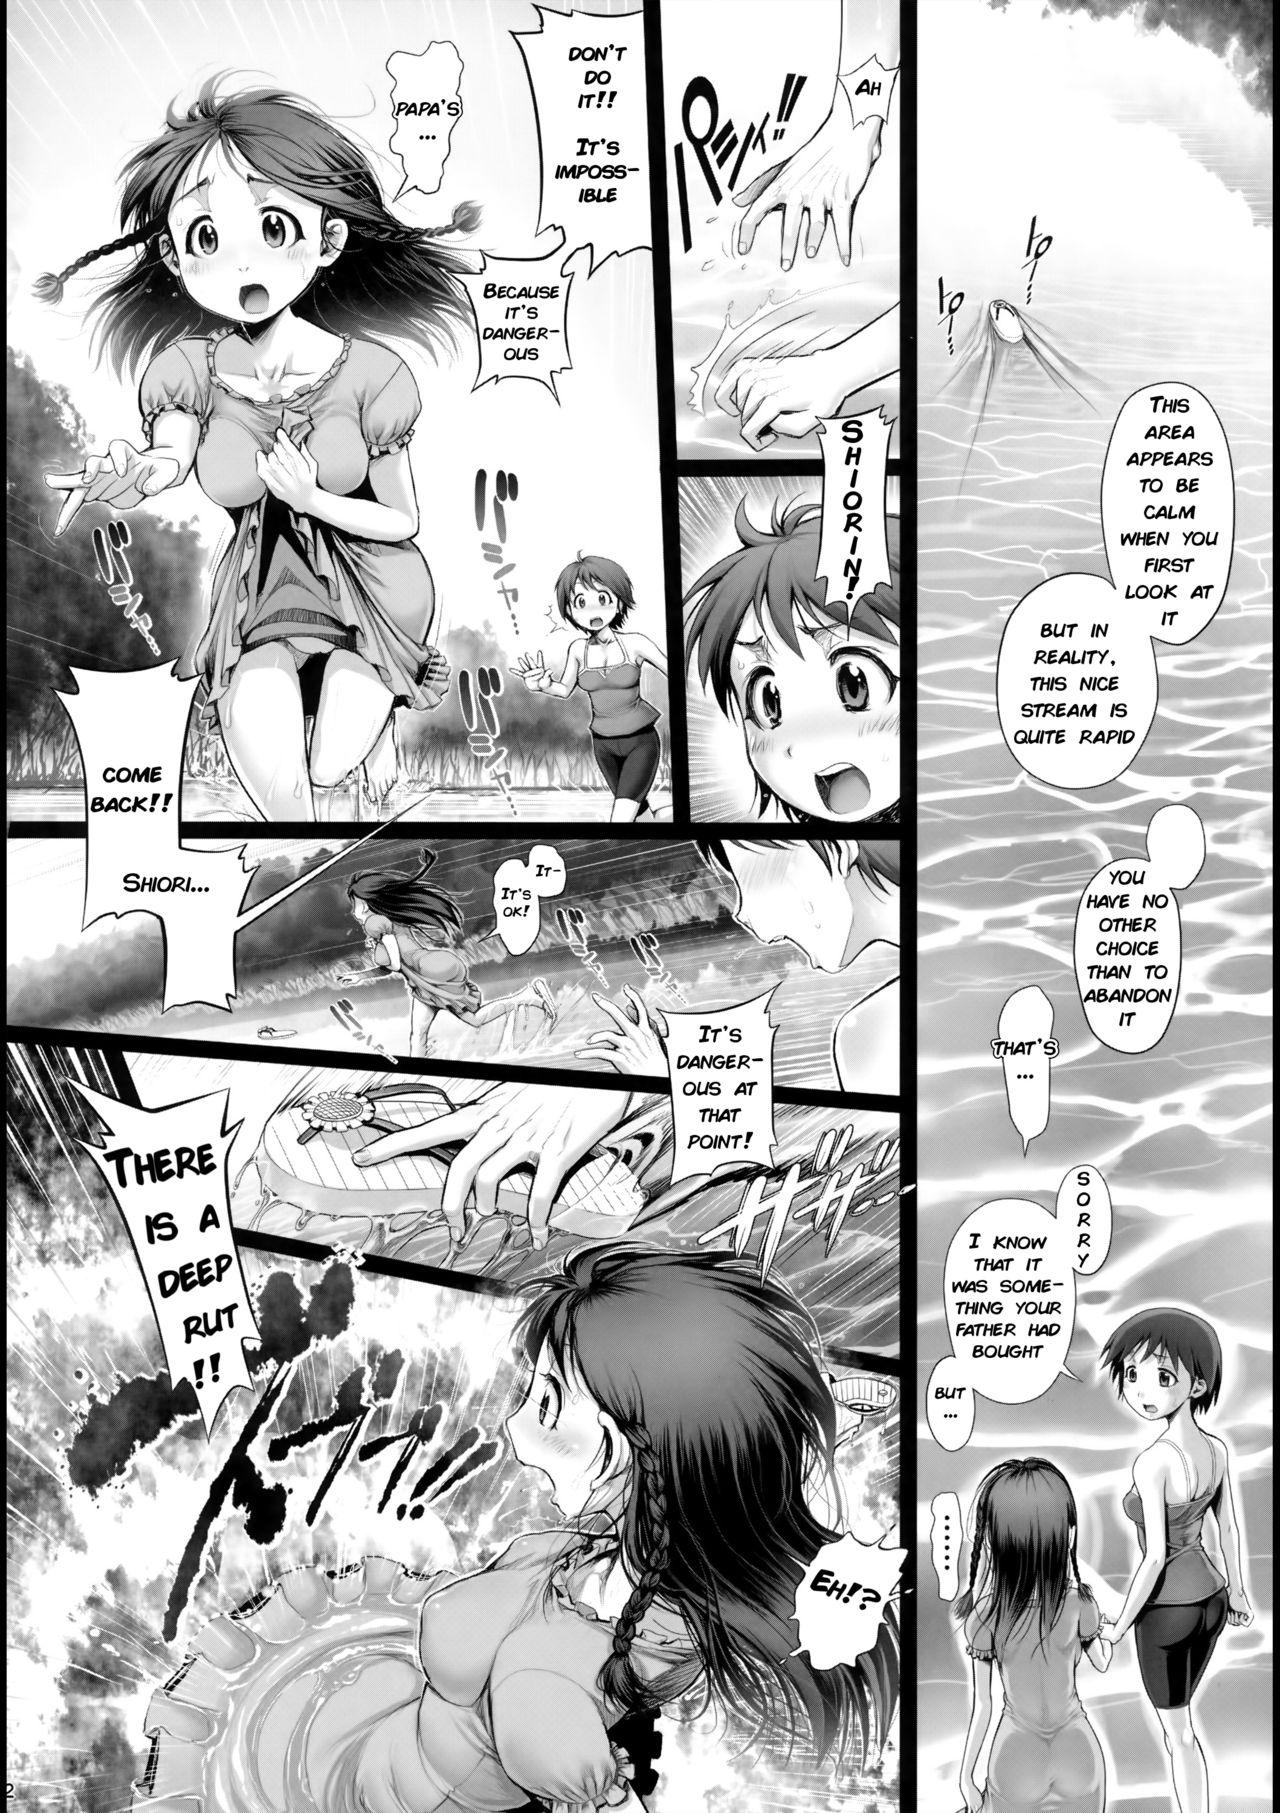 Monster Dick Angel Crisis 3 - Shizukana Kohan no Mori no Kage kara - Original Transvestite - Page 3